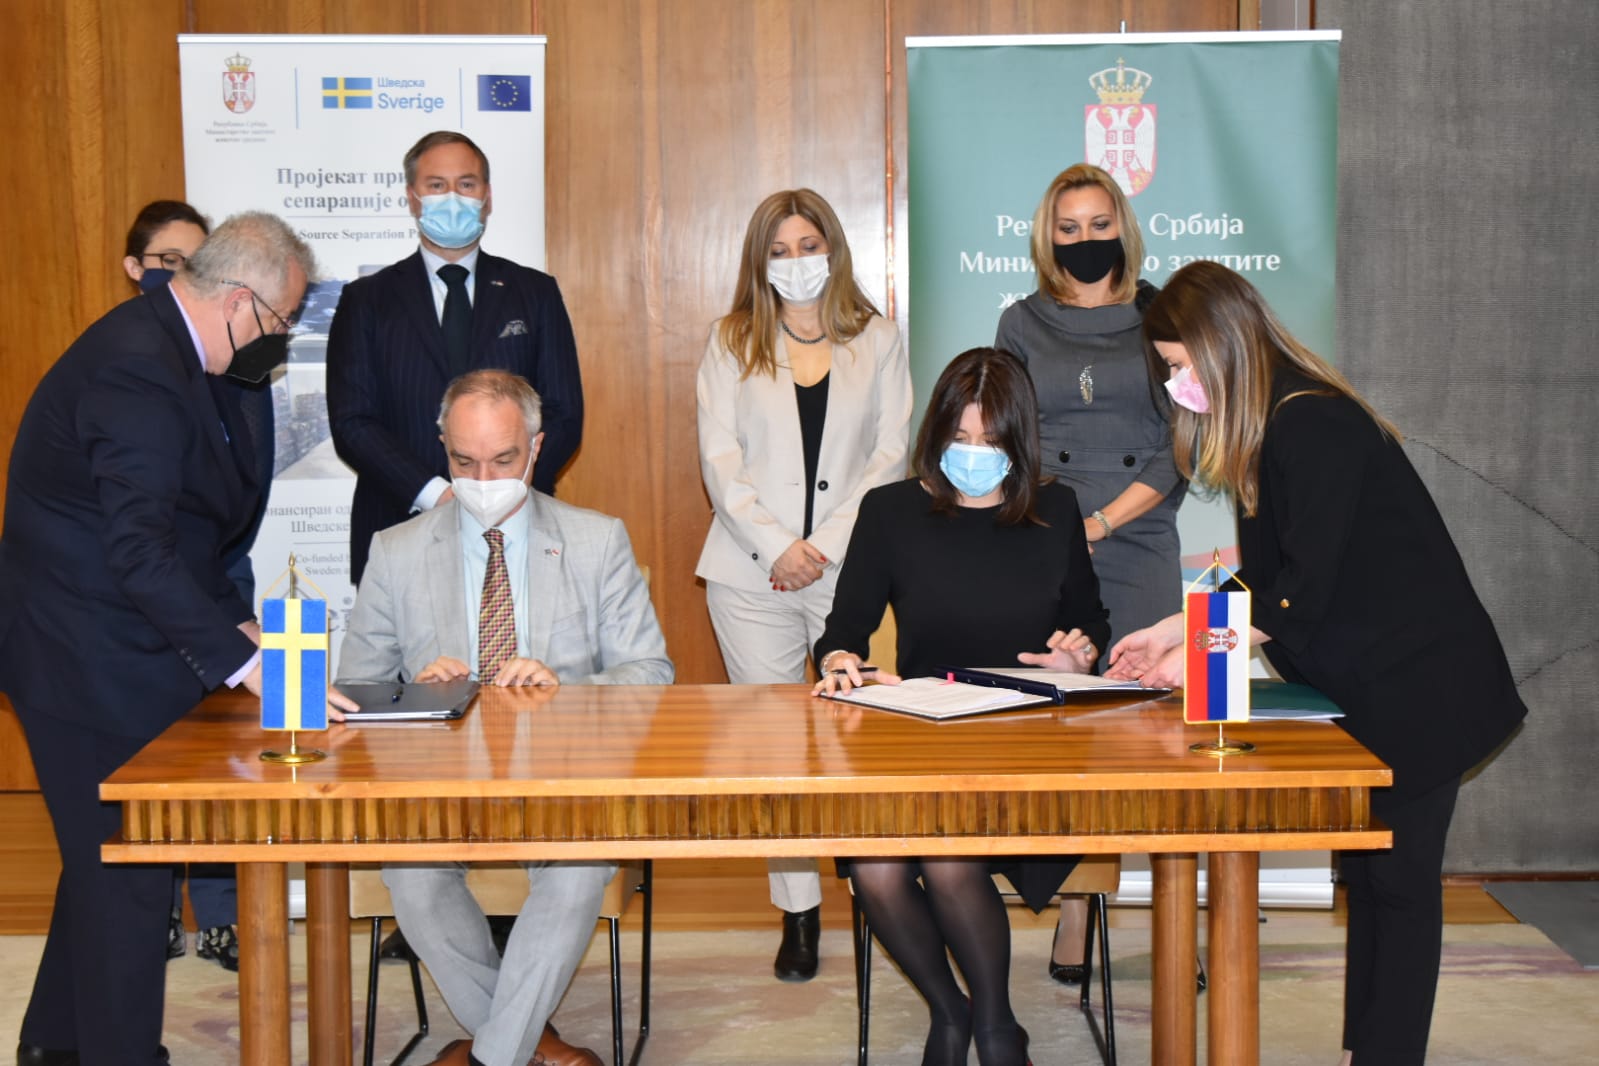 Вујовић и Лундин потписали споразум: Шведска улаже још 600.000 евра за еко пројекте у Србији